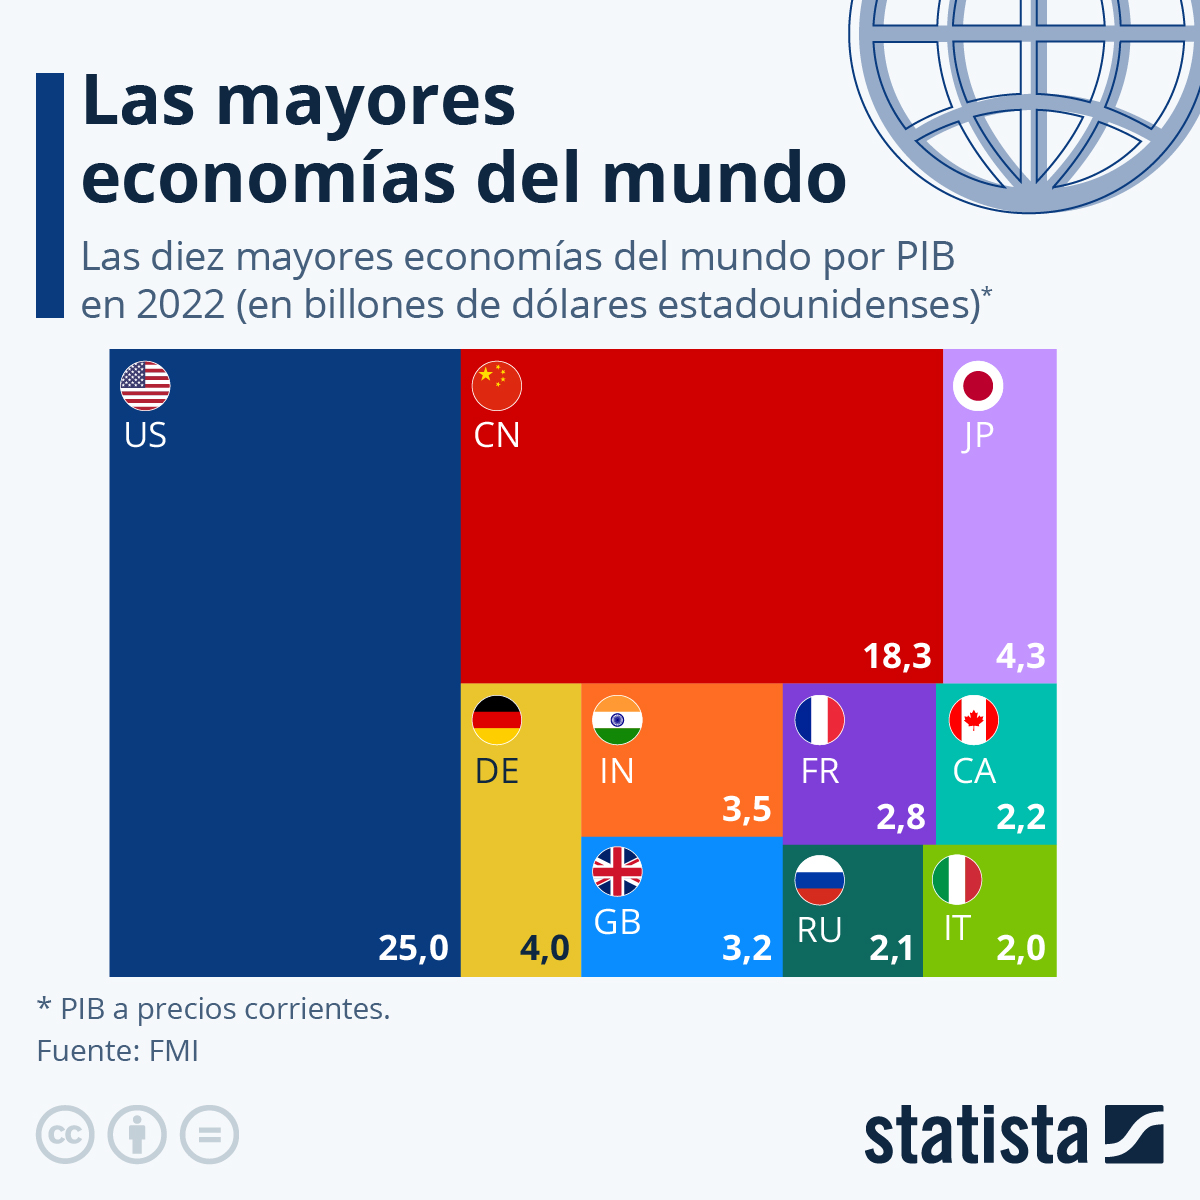 Las mayores economías del mundo